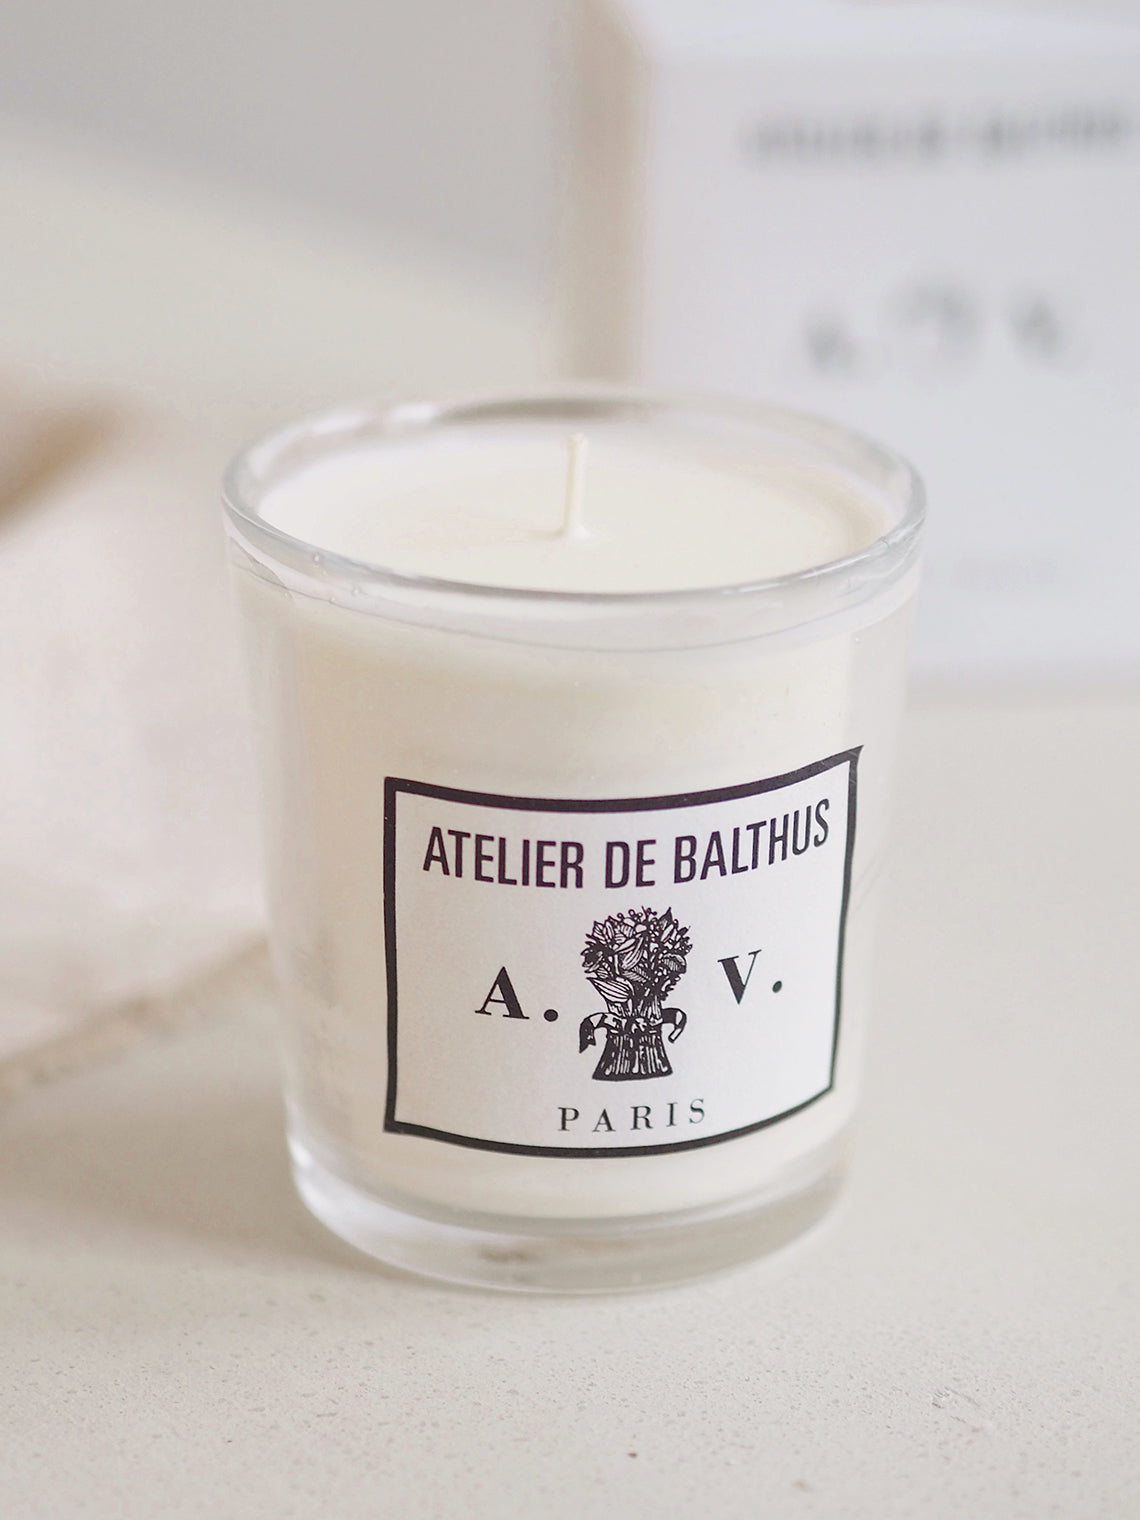 Atelier de Balthus Candle